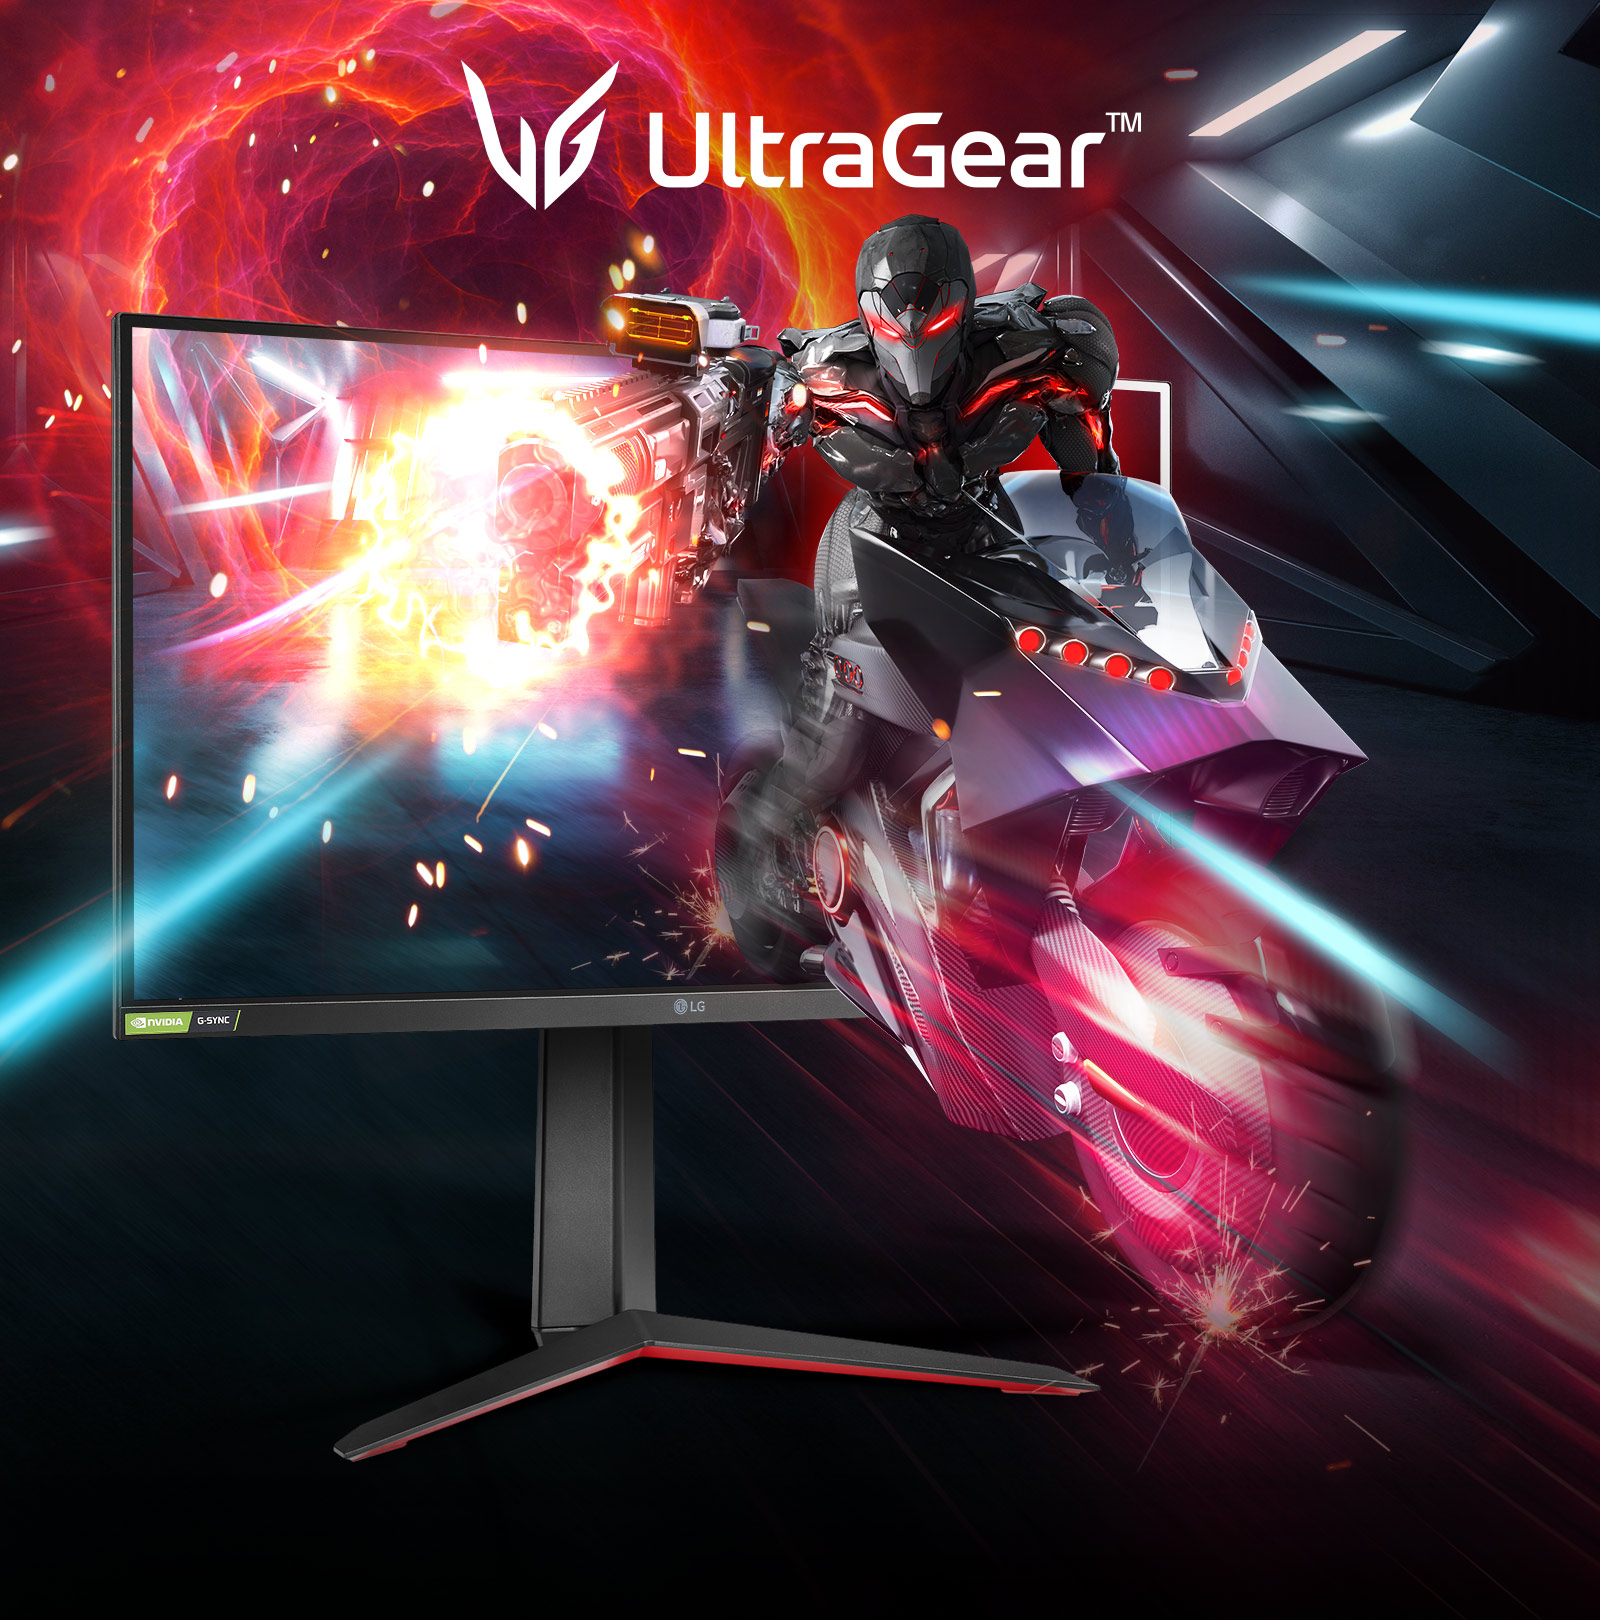 Monitor LG UltraGear, un equipo potente para tus juegos